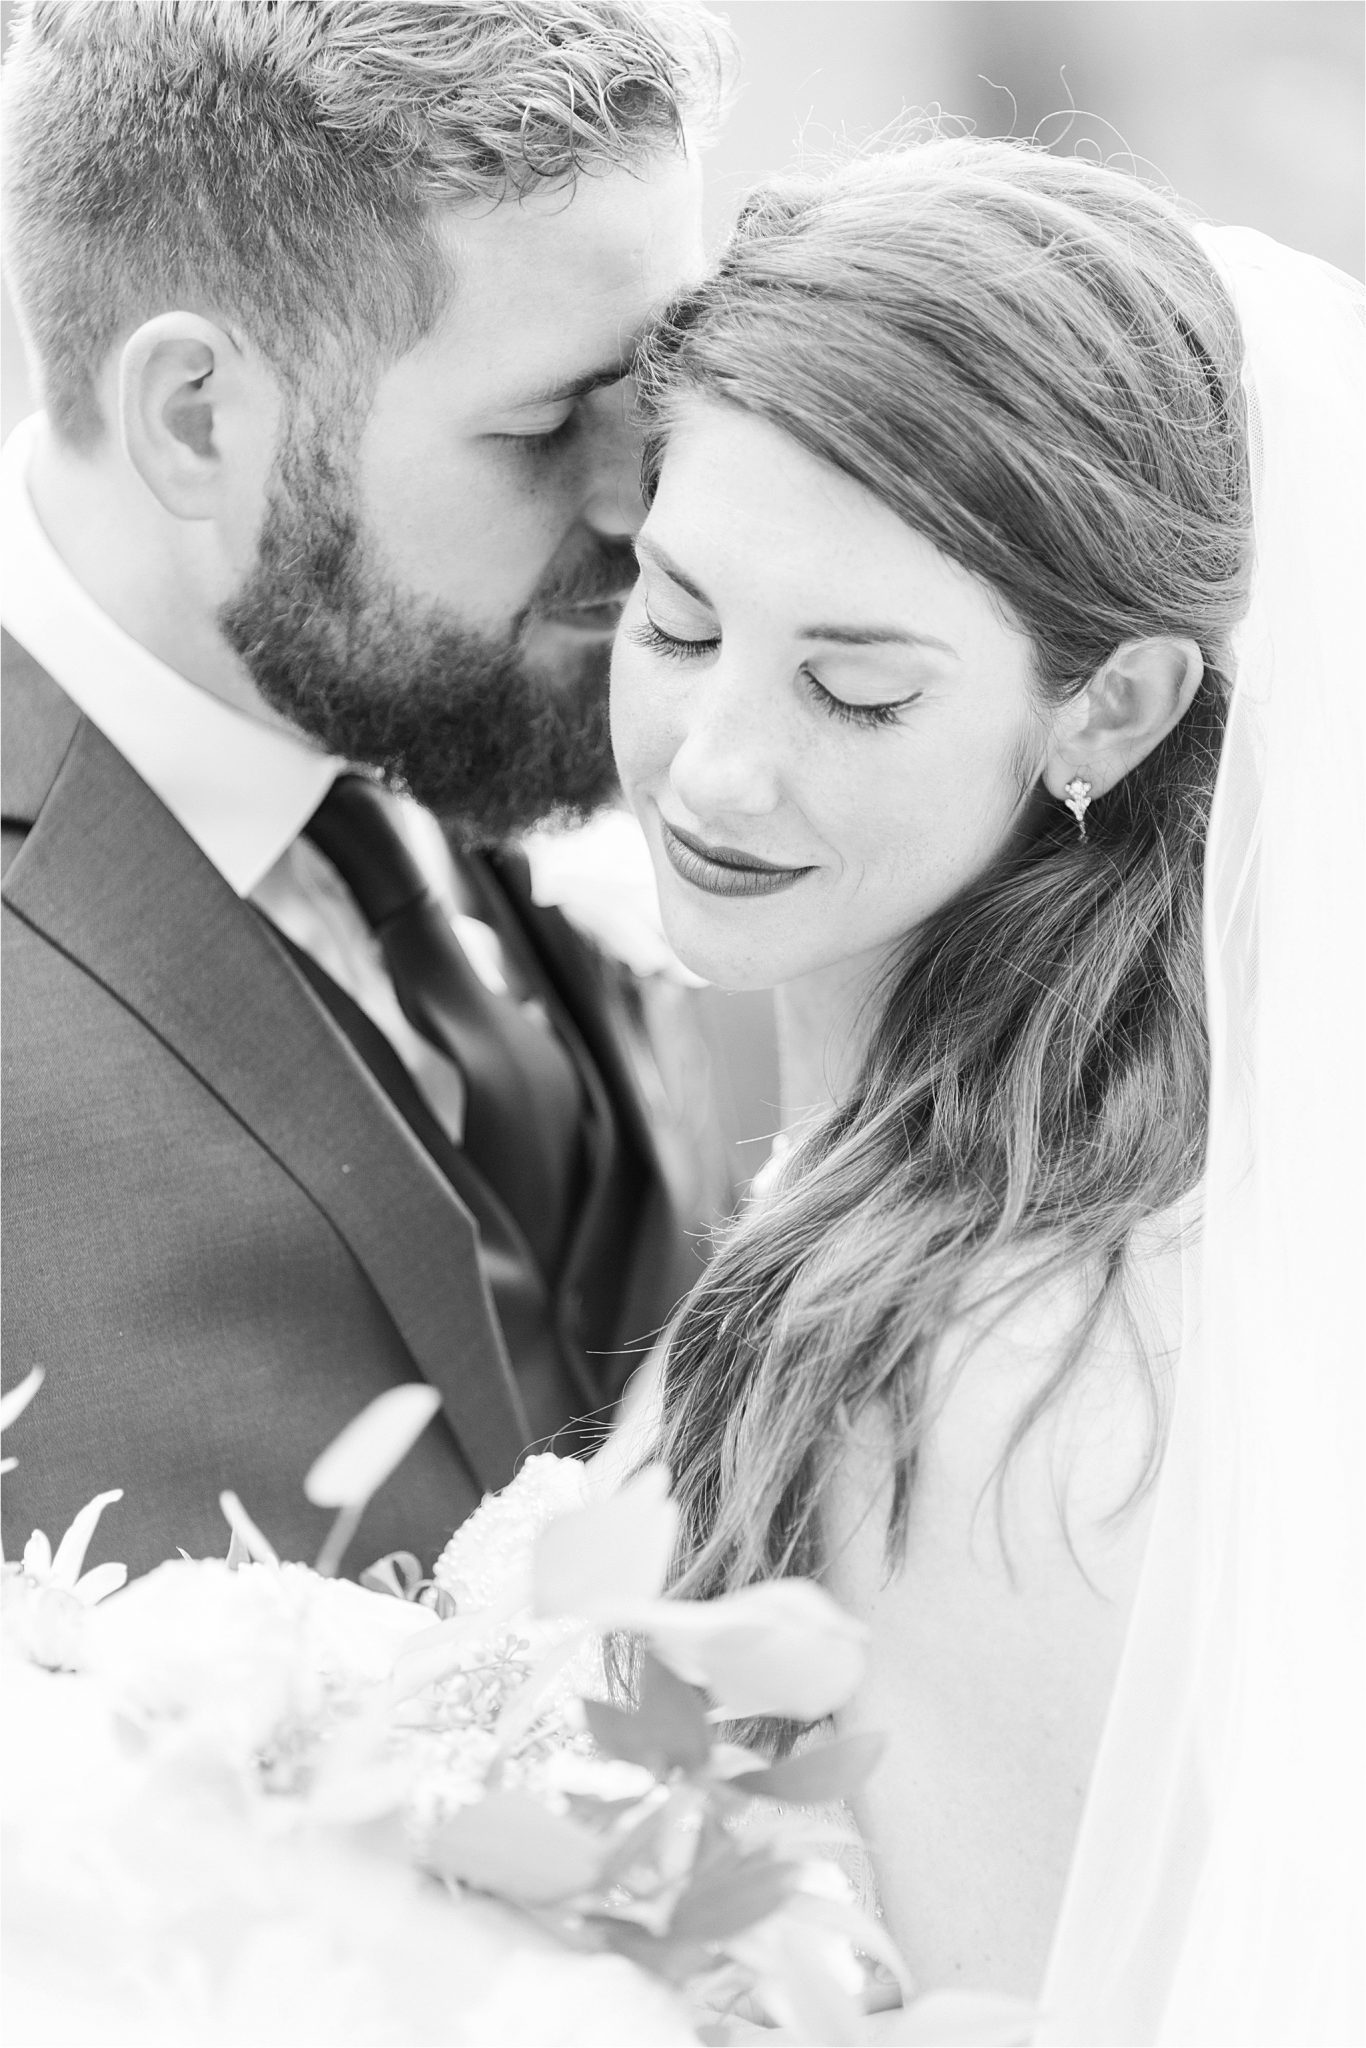 bride and groom-wedding photos-portraits-close ups-precious moments